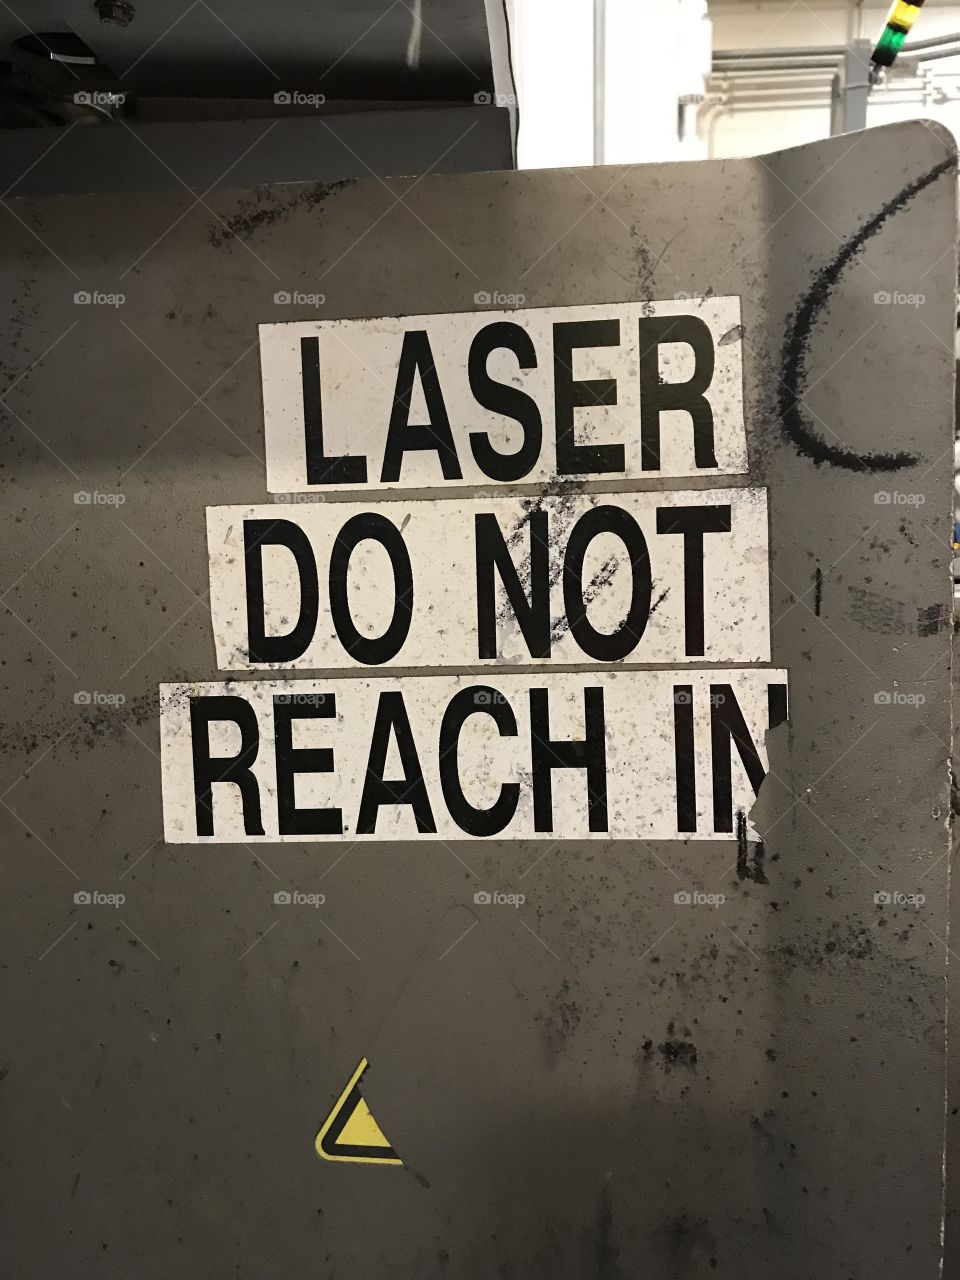 Laser warning